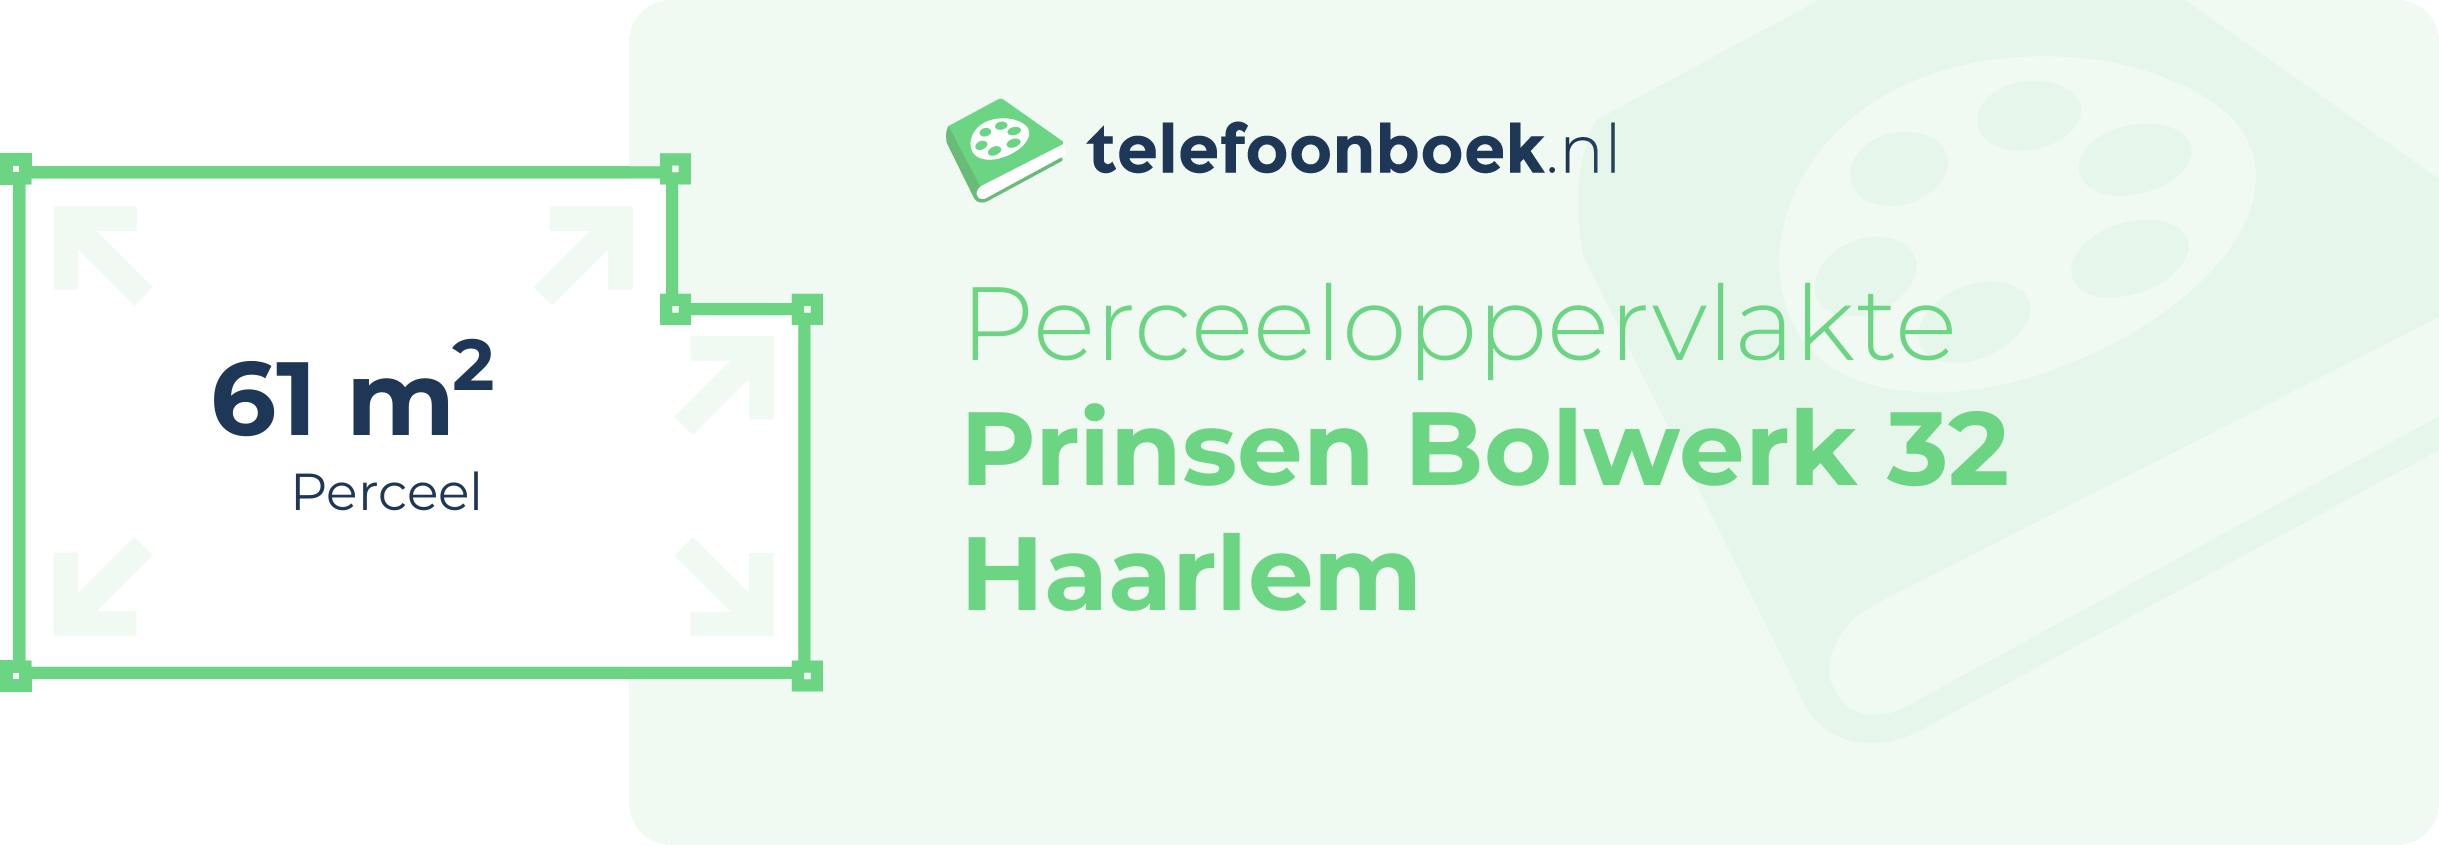 Perceeloppervlakte Prinsen Bolwerk 32 Haarlem